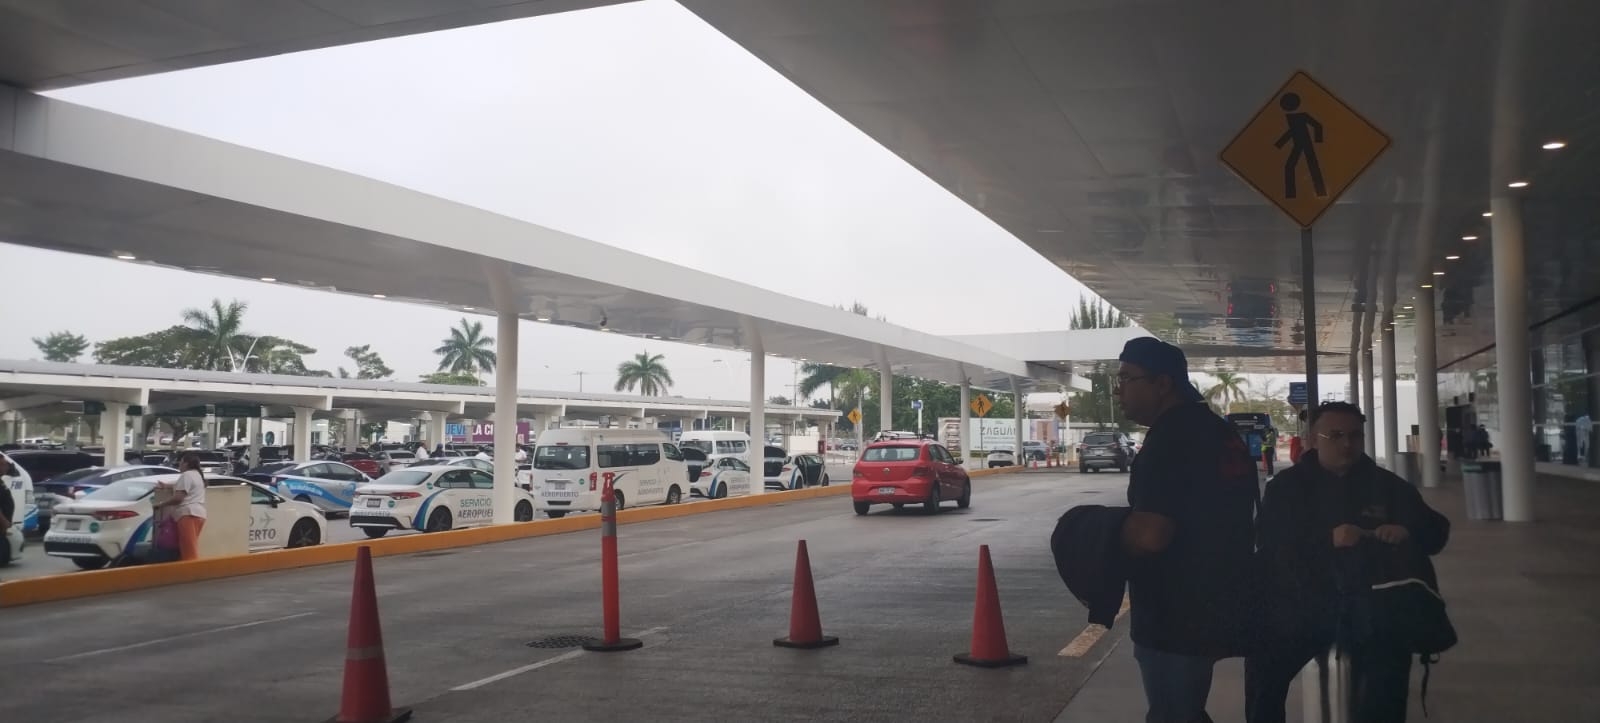 La pista del aeropuerto de Mérida fue cubierta por neblina este viernes